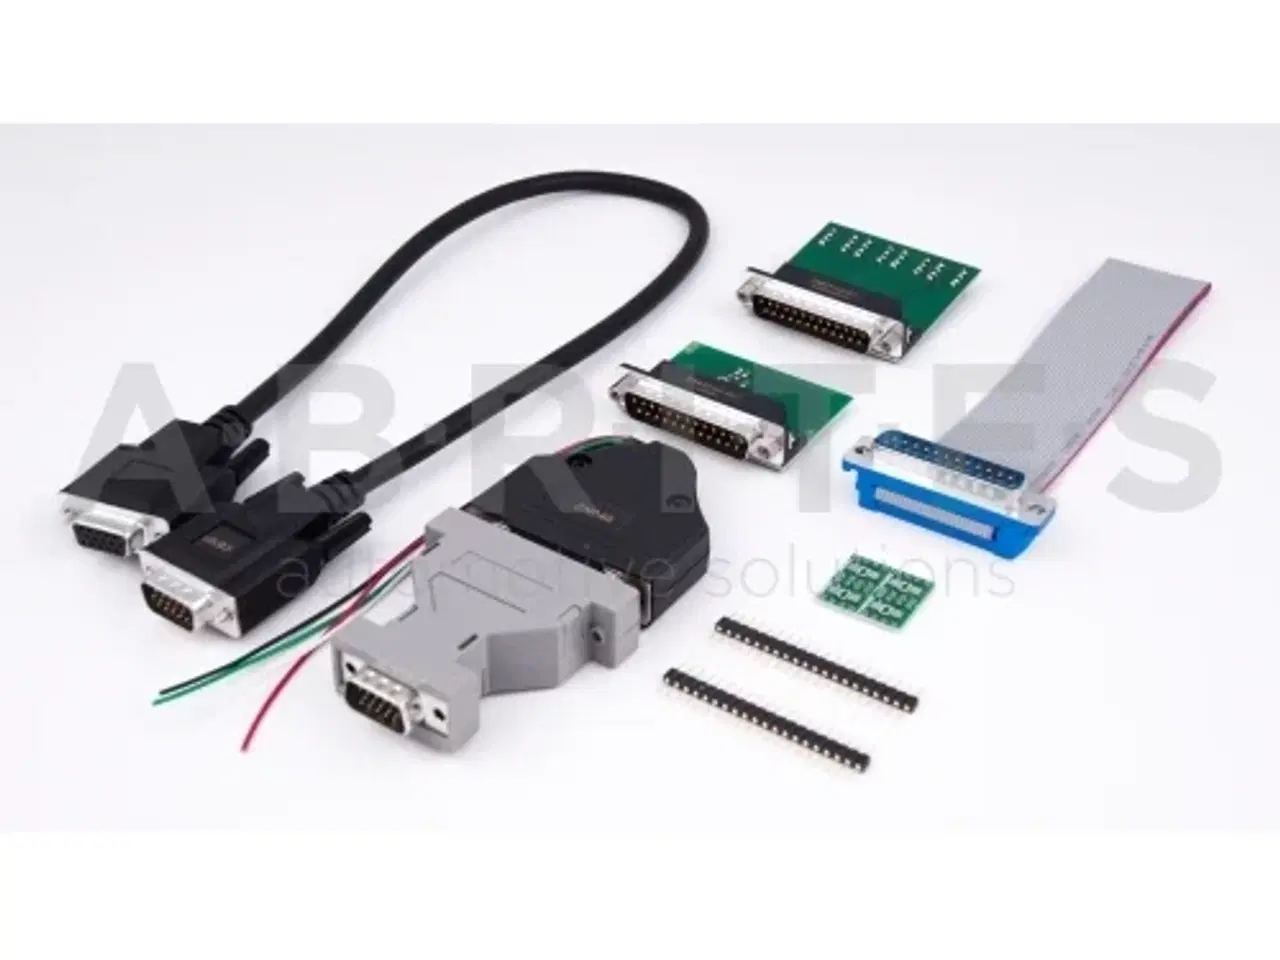 Billede 1 - UDSTYR TIL AVDI køb ekstra udstyr til din AVDI her (hardware)